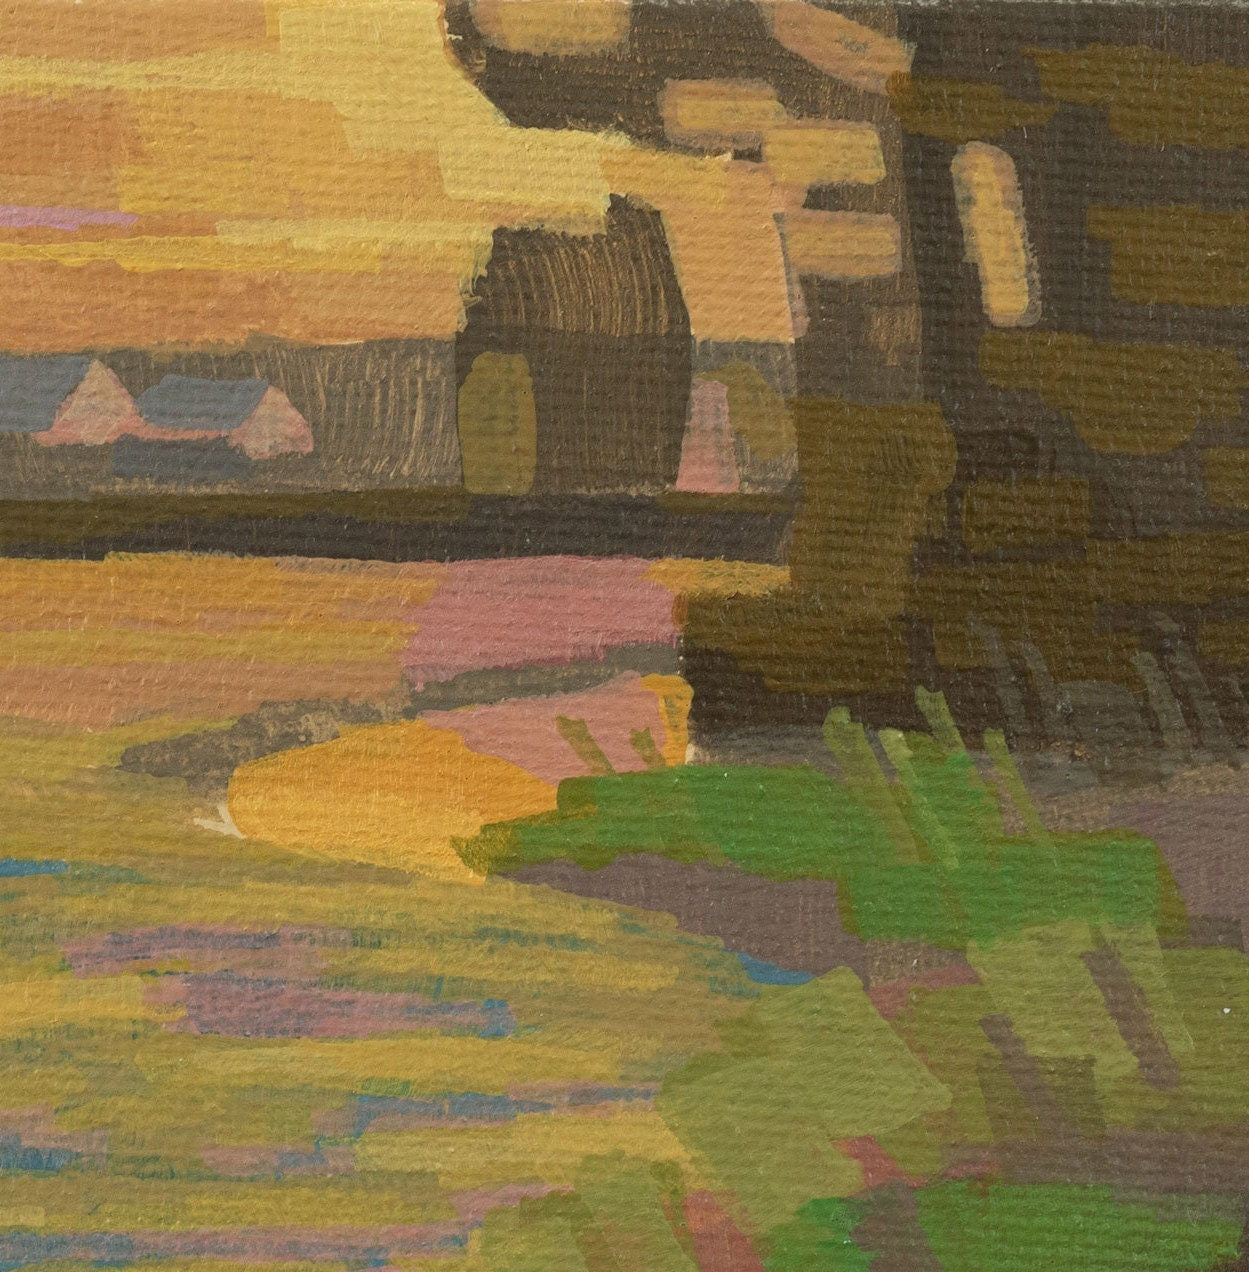 Original Gemälde "Sonne im Feld" – handgemalt – Acrylbild – 10x15 cm – Landschaft Bild – Einzelstück – mit Rahmen